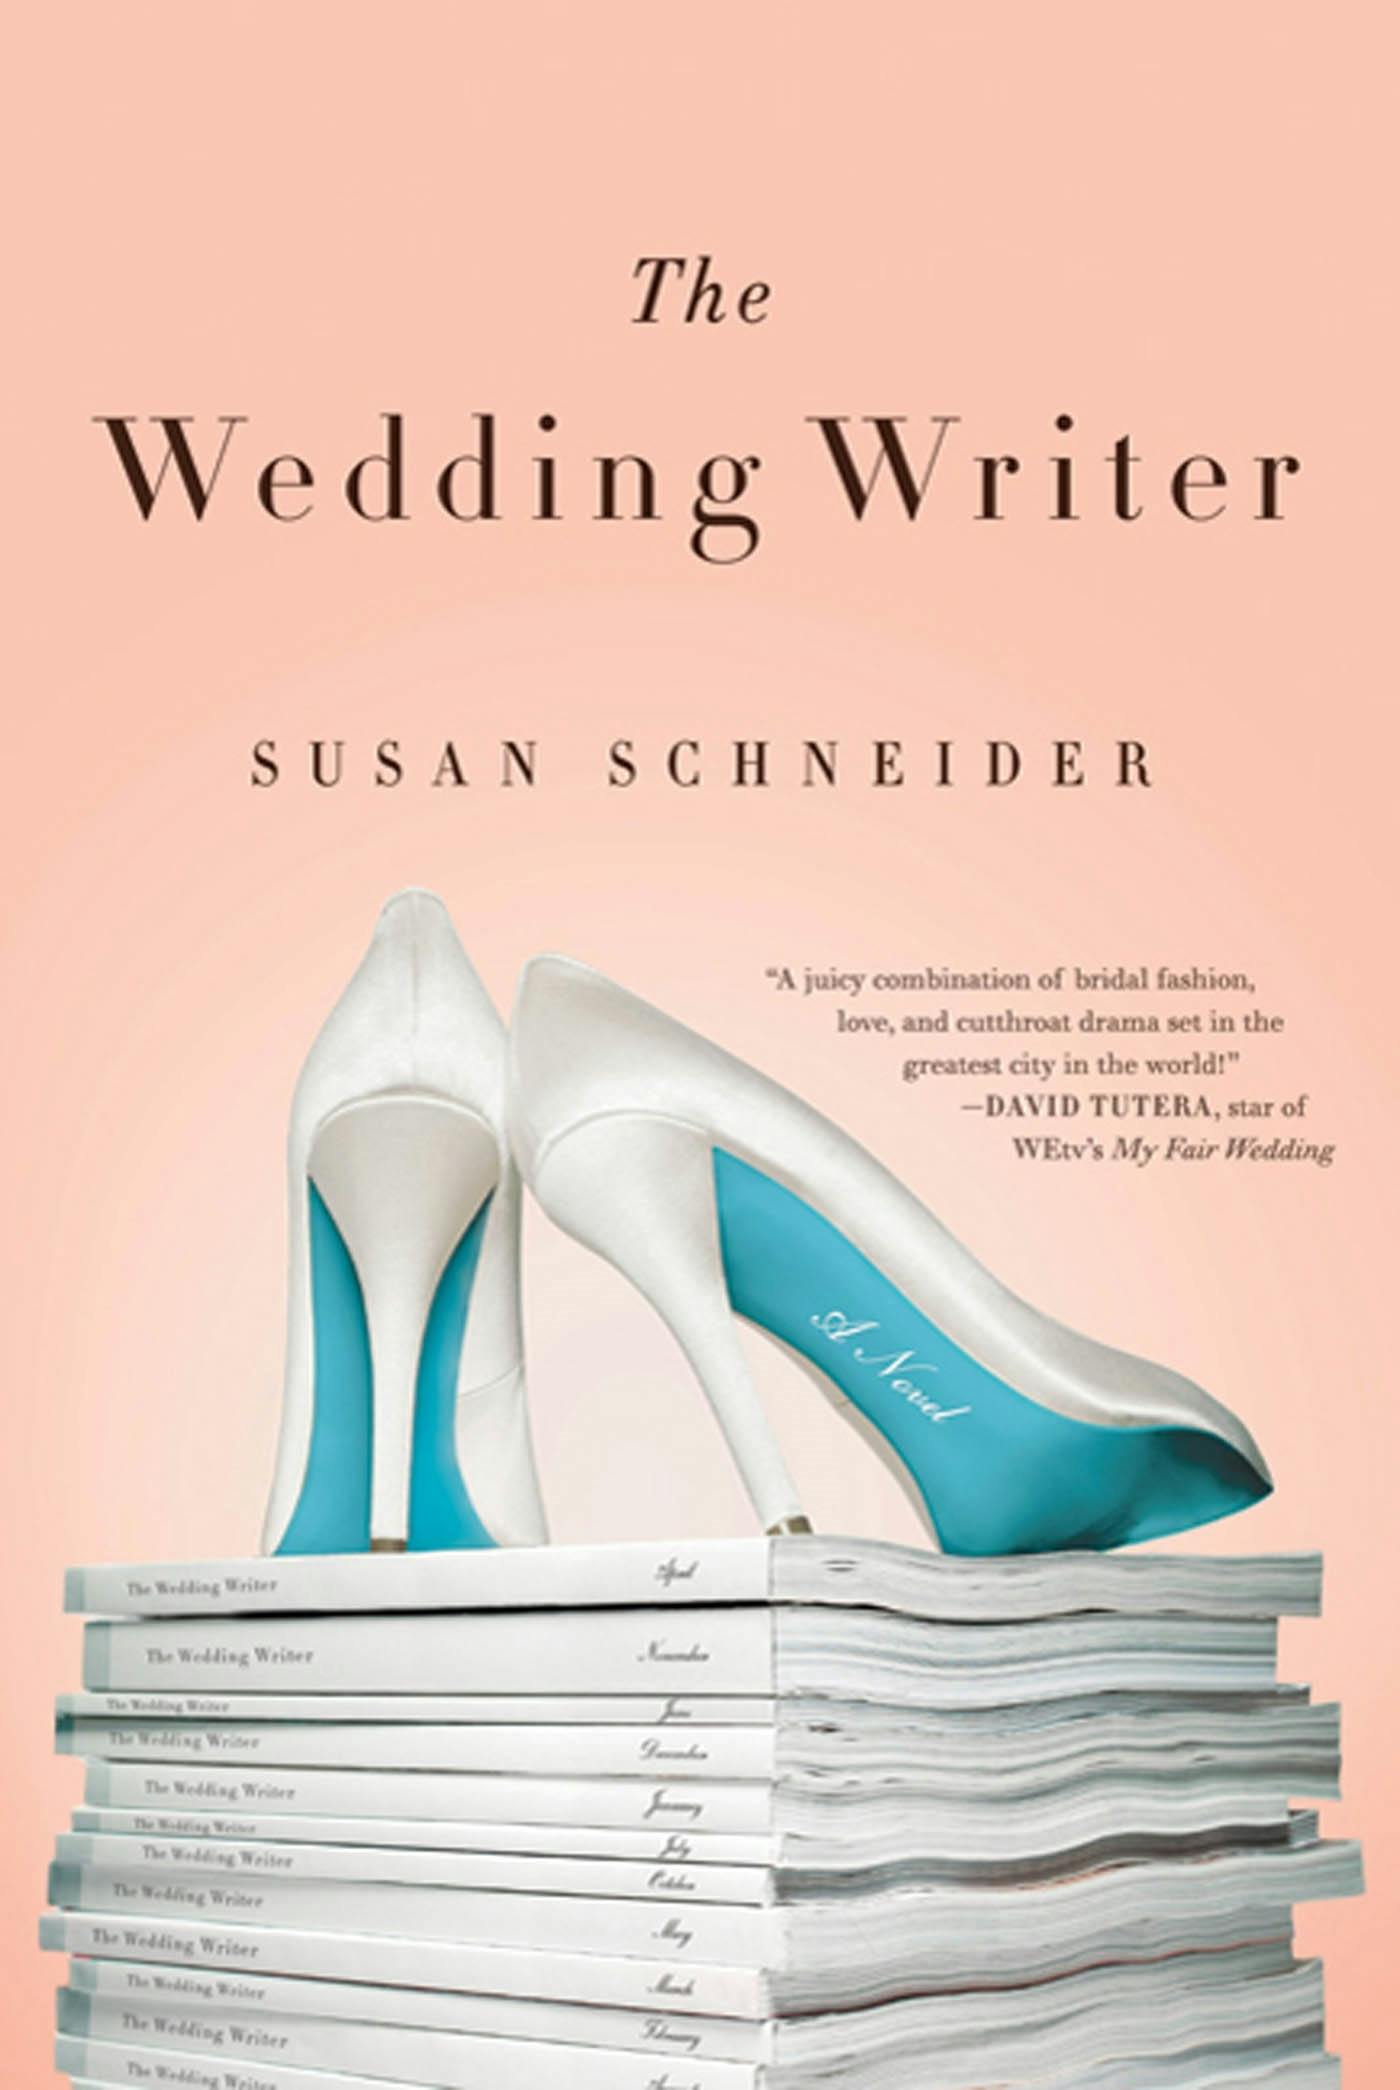 The Wedding Writer image